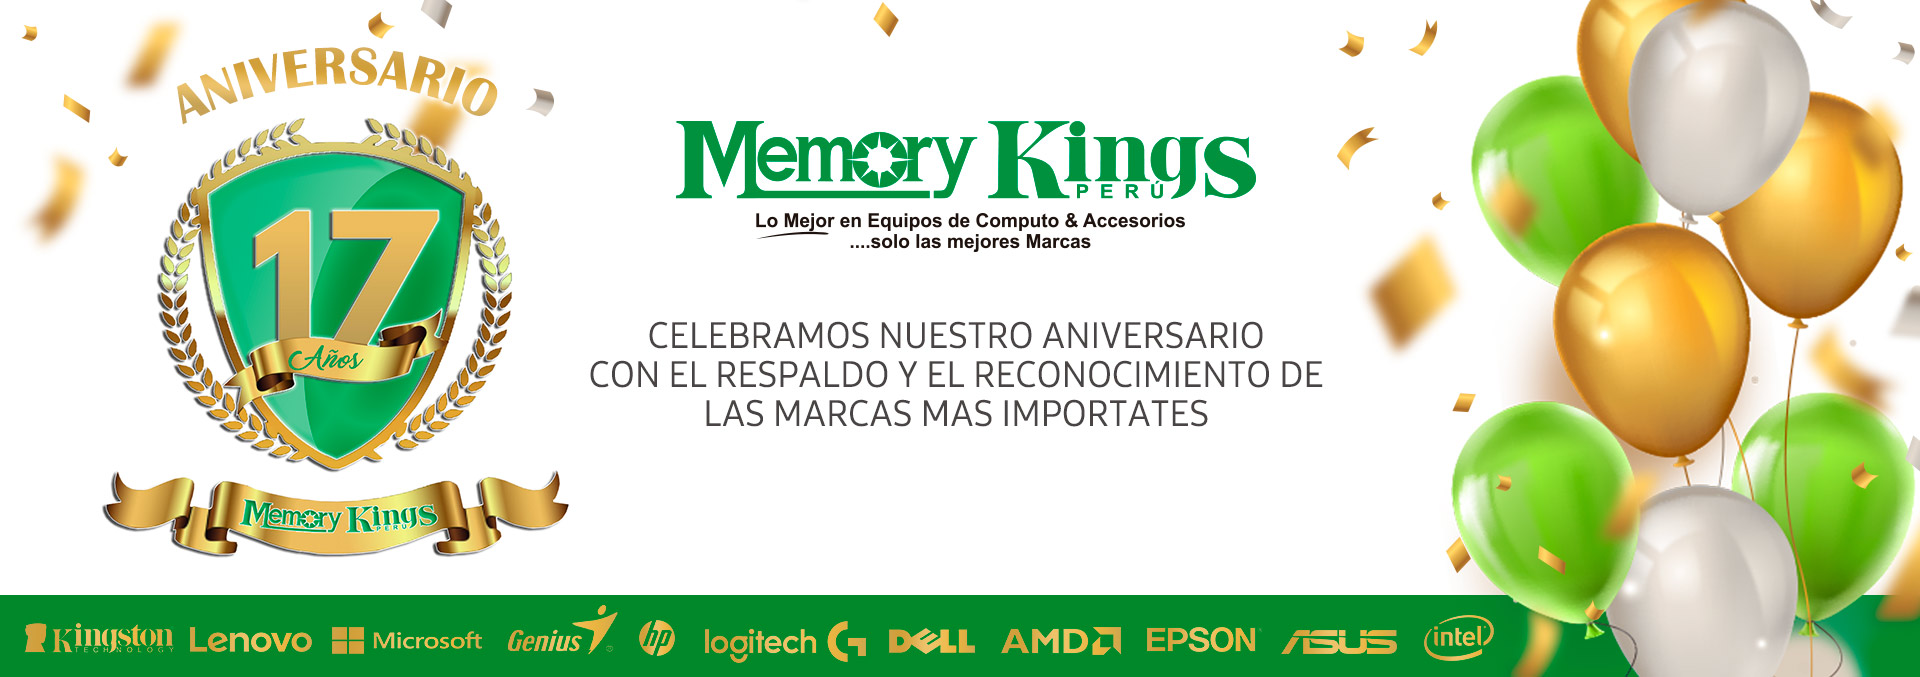 MEMORY KINGS 17 ANIVERSARIO - Memory Kings, lo mejor en equipos de computo y  accesorios